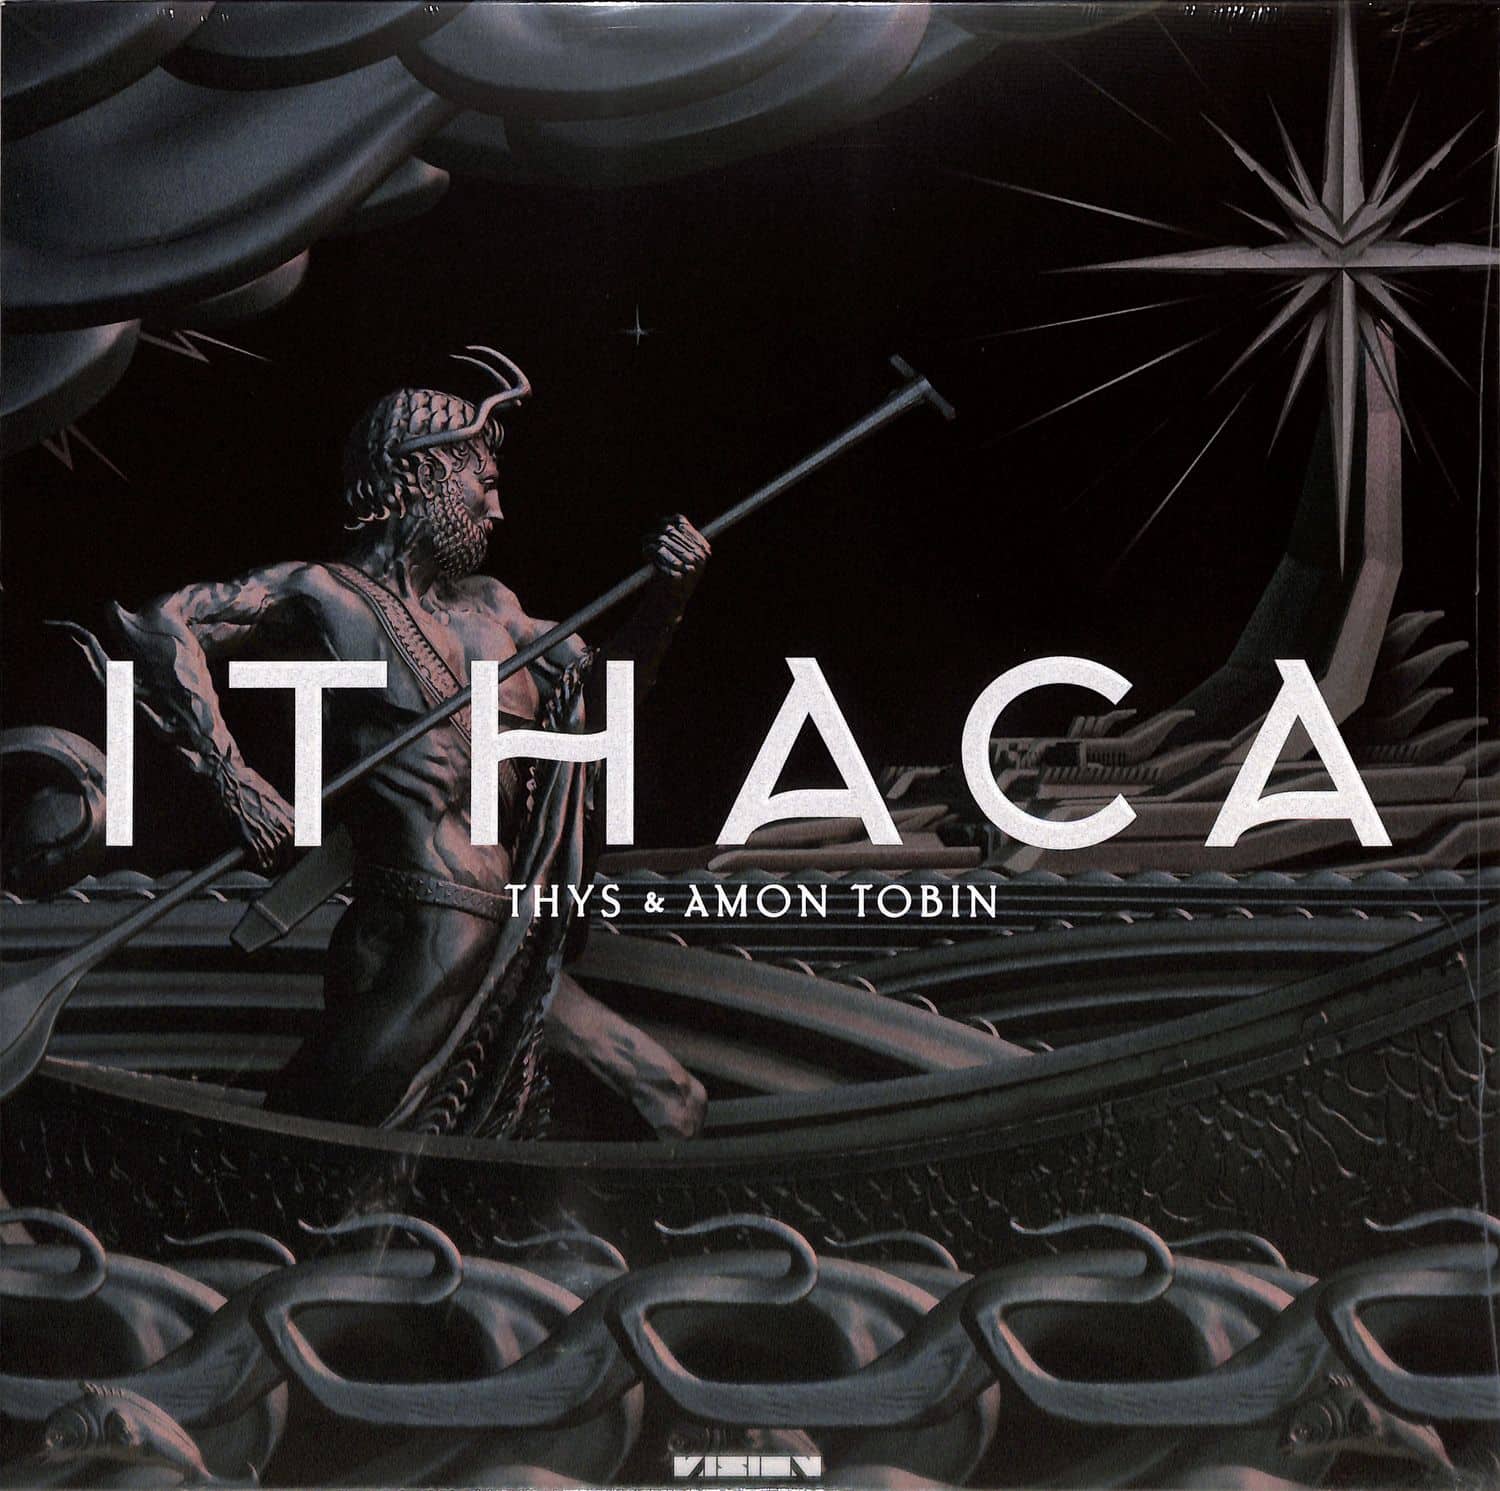 Thys & Amon Tobin - ITHACA 